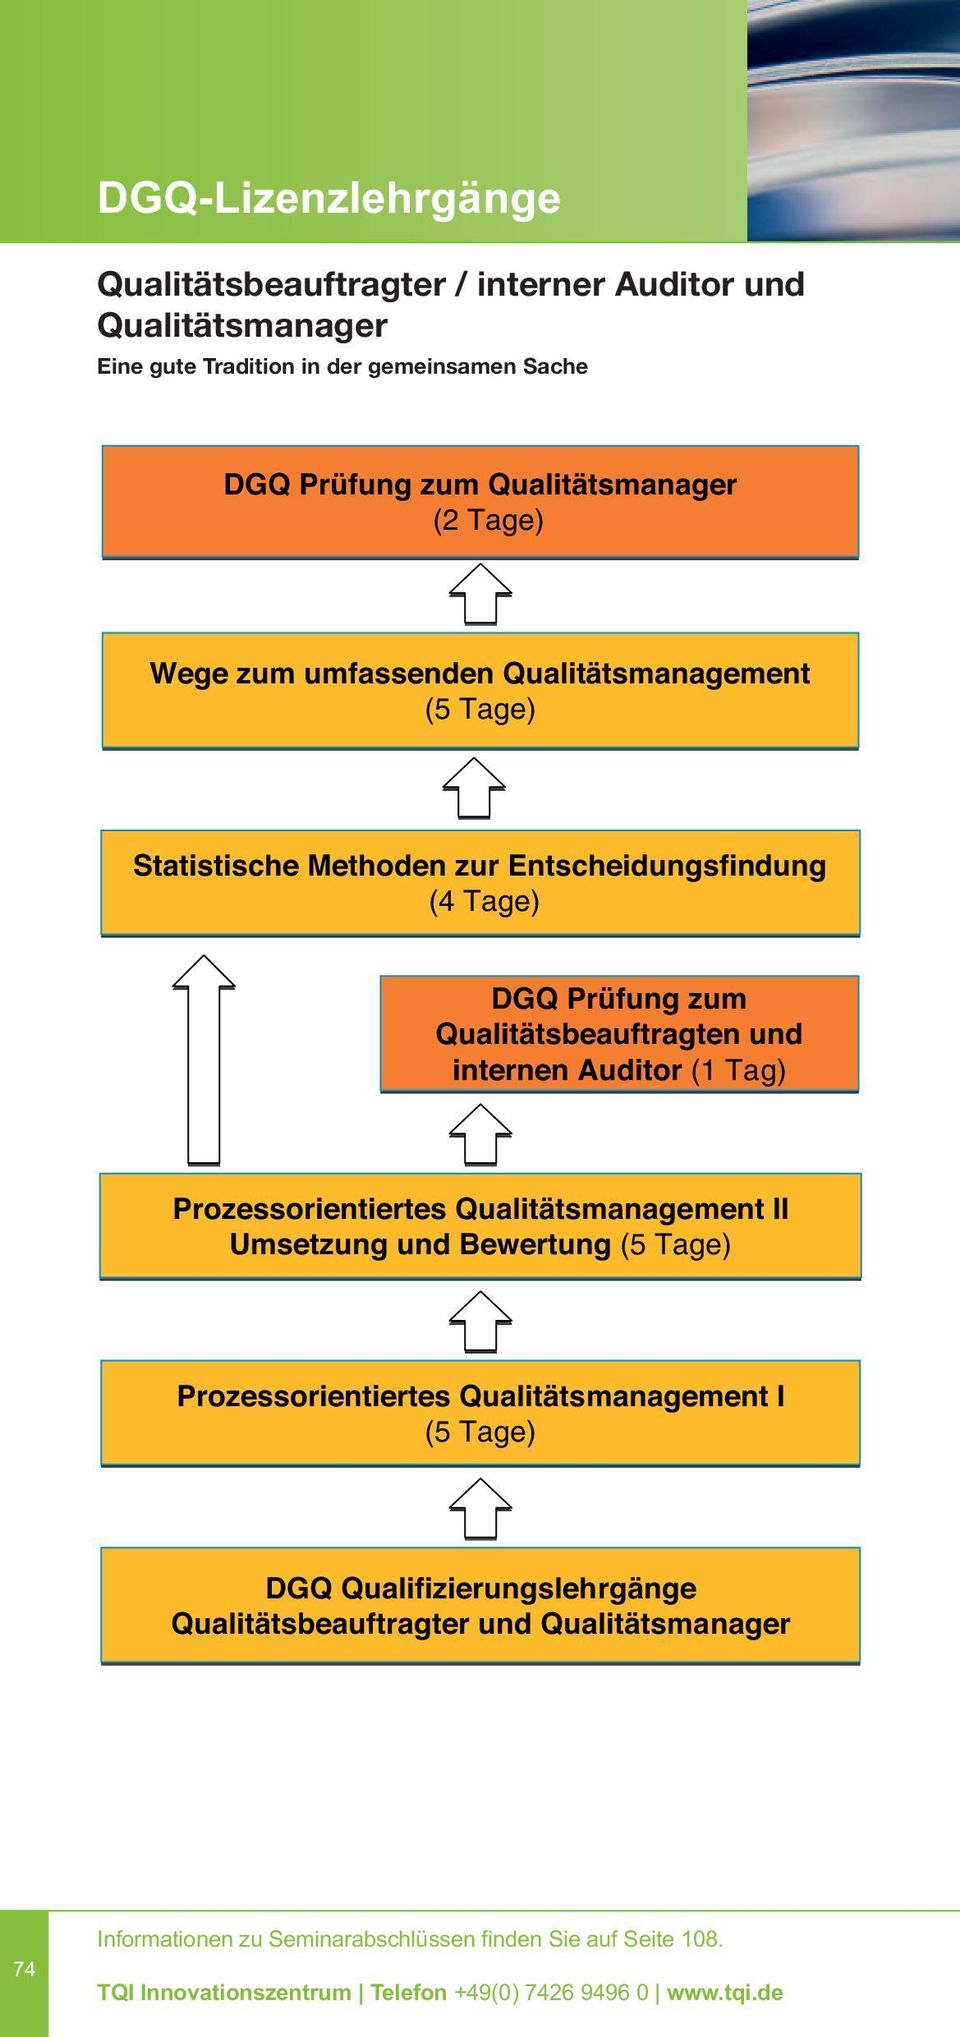 Tage) DGQ Prüfung zum Qualitätsbeauftragten und internen Auditor (1 Tag) Prozessorientiertes Qualitätsmanagement II Umsetzung und